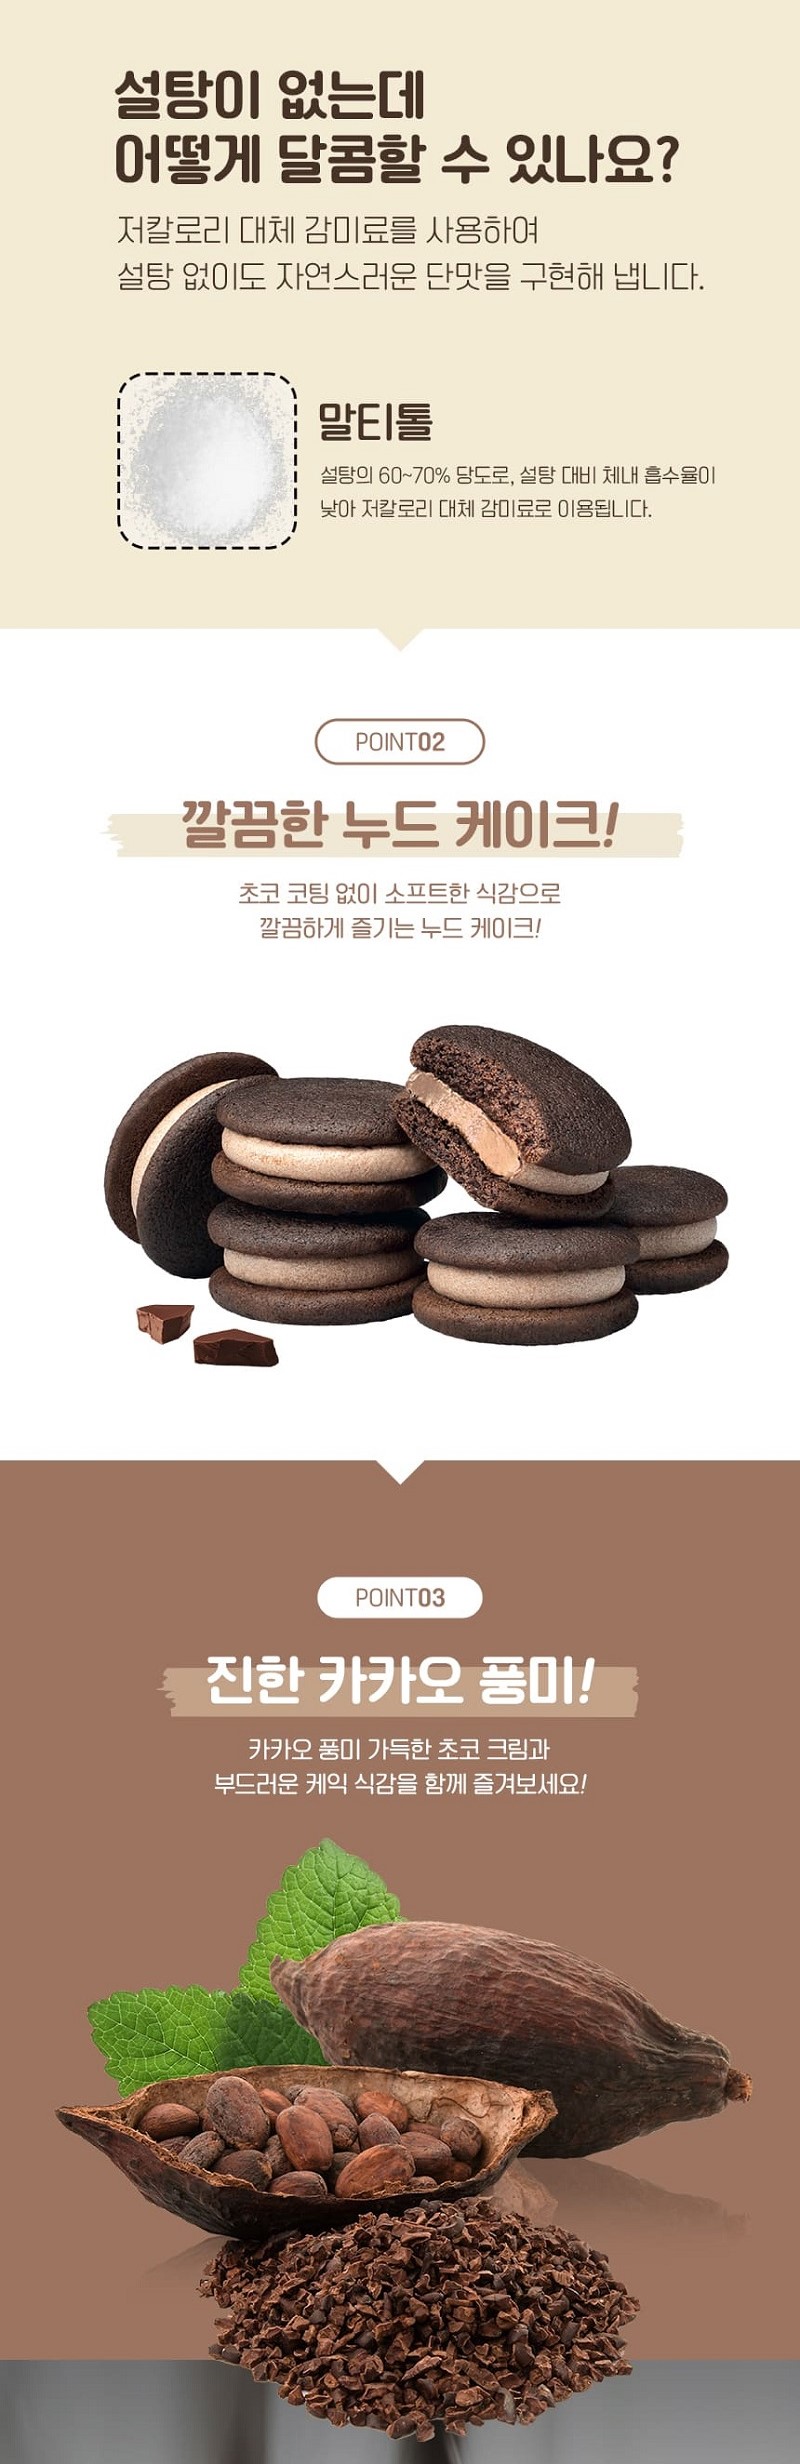 韓國食品-[롯데] 제로카카오케이크 171g